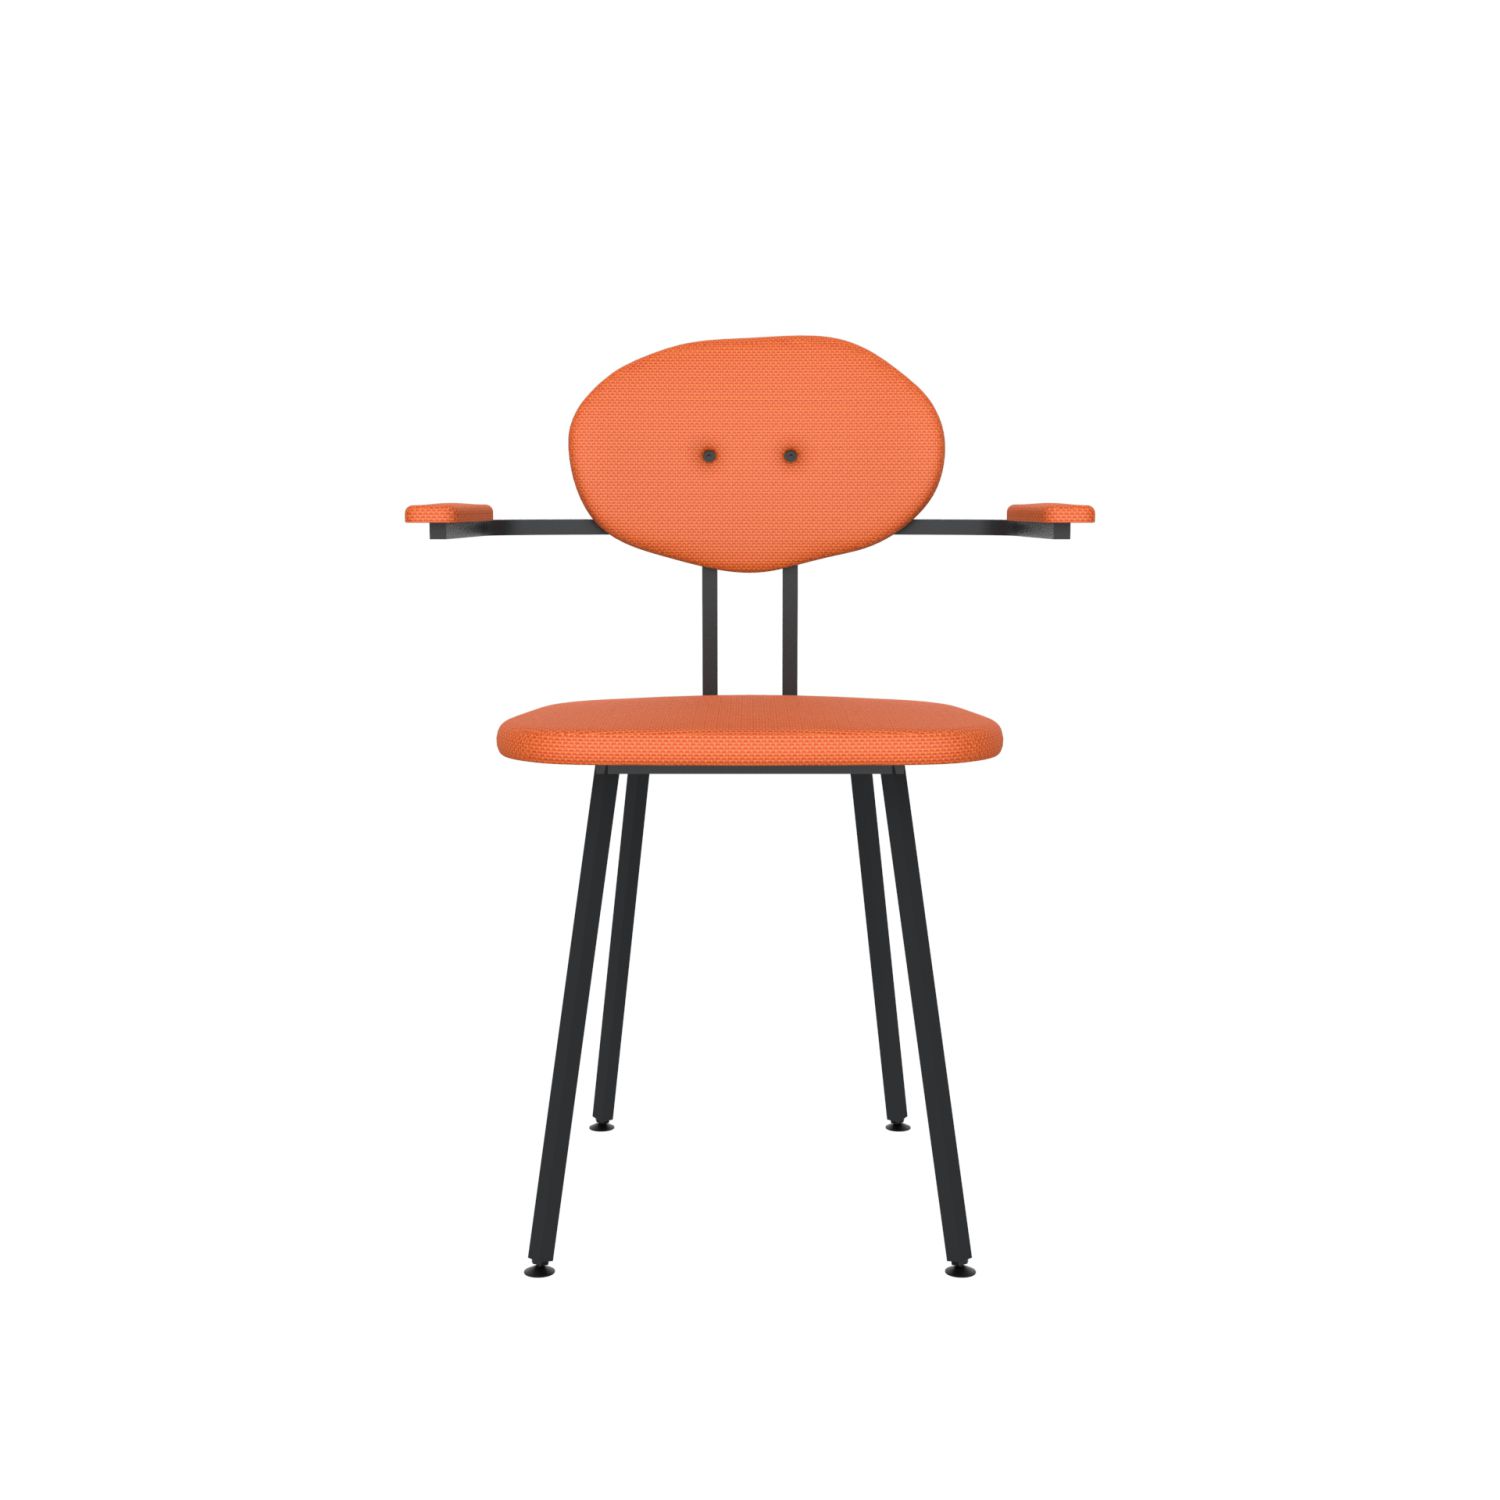 lensvelt maarten baas chair 102 not stackable with armrests backrest d burn orange 102 black ral9005 hard leg ends